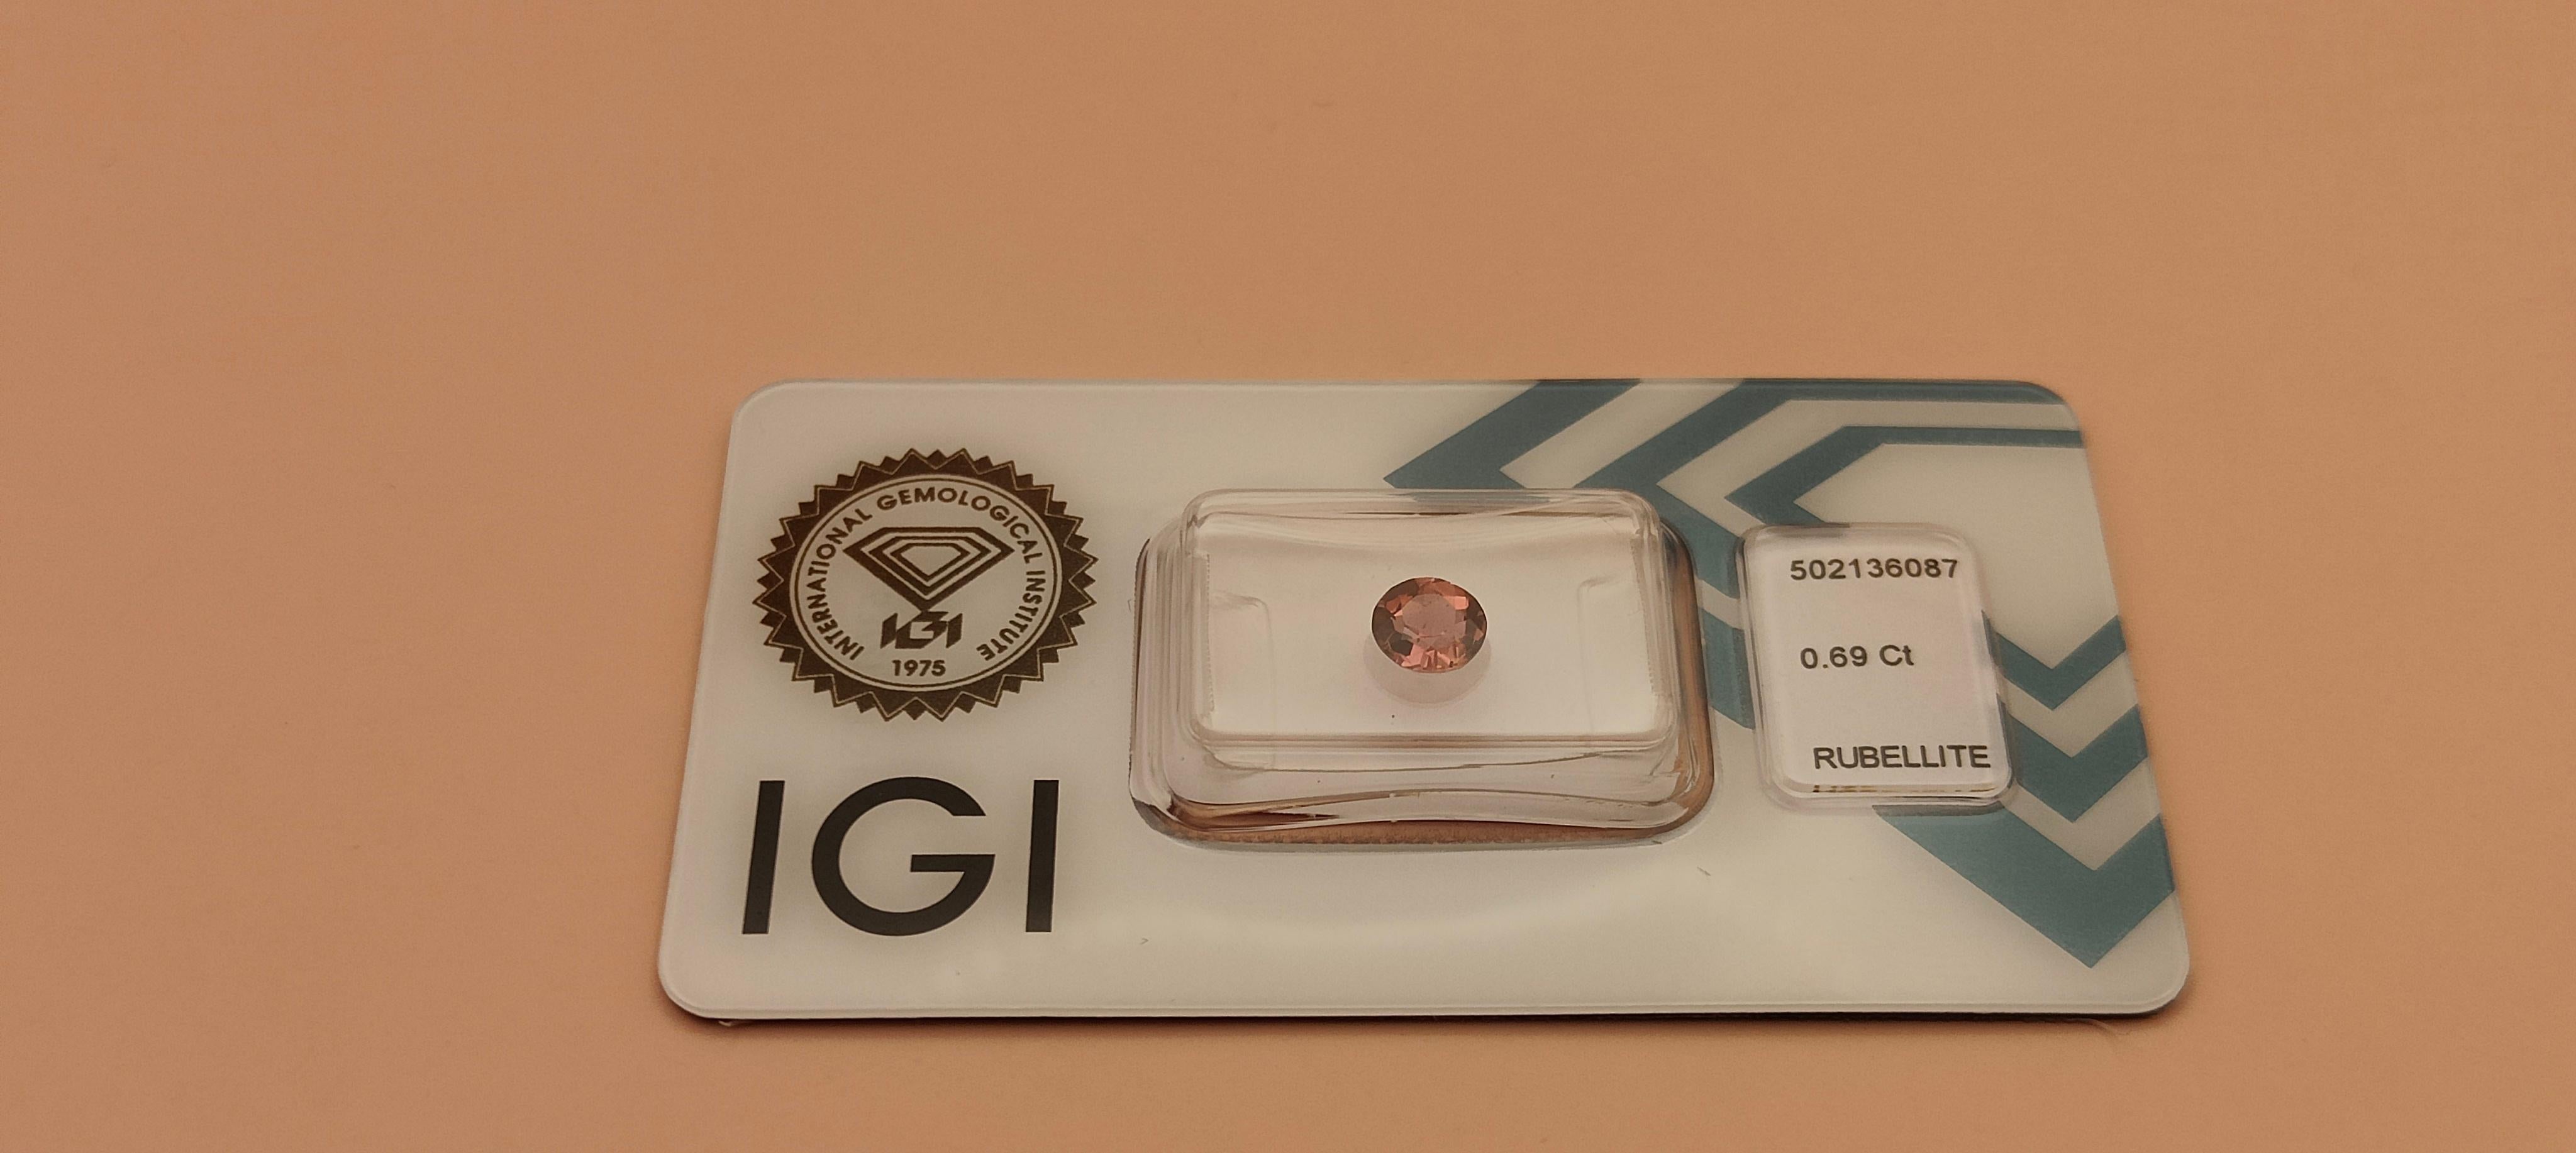 Round Cut IGI Certified Natural Purplish Pink Rubellite Tourmaline 0.69 Carat Gemstone For Sale